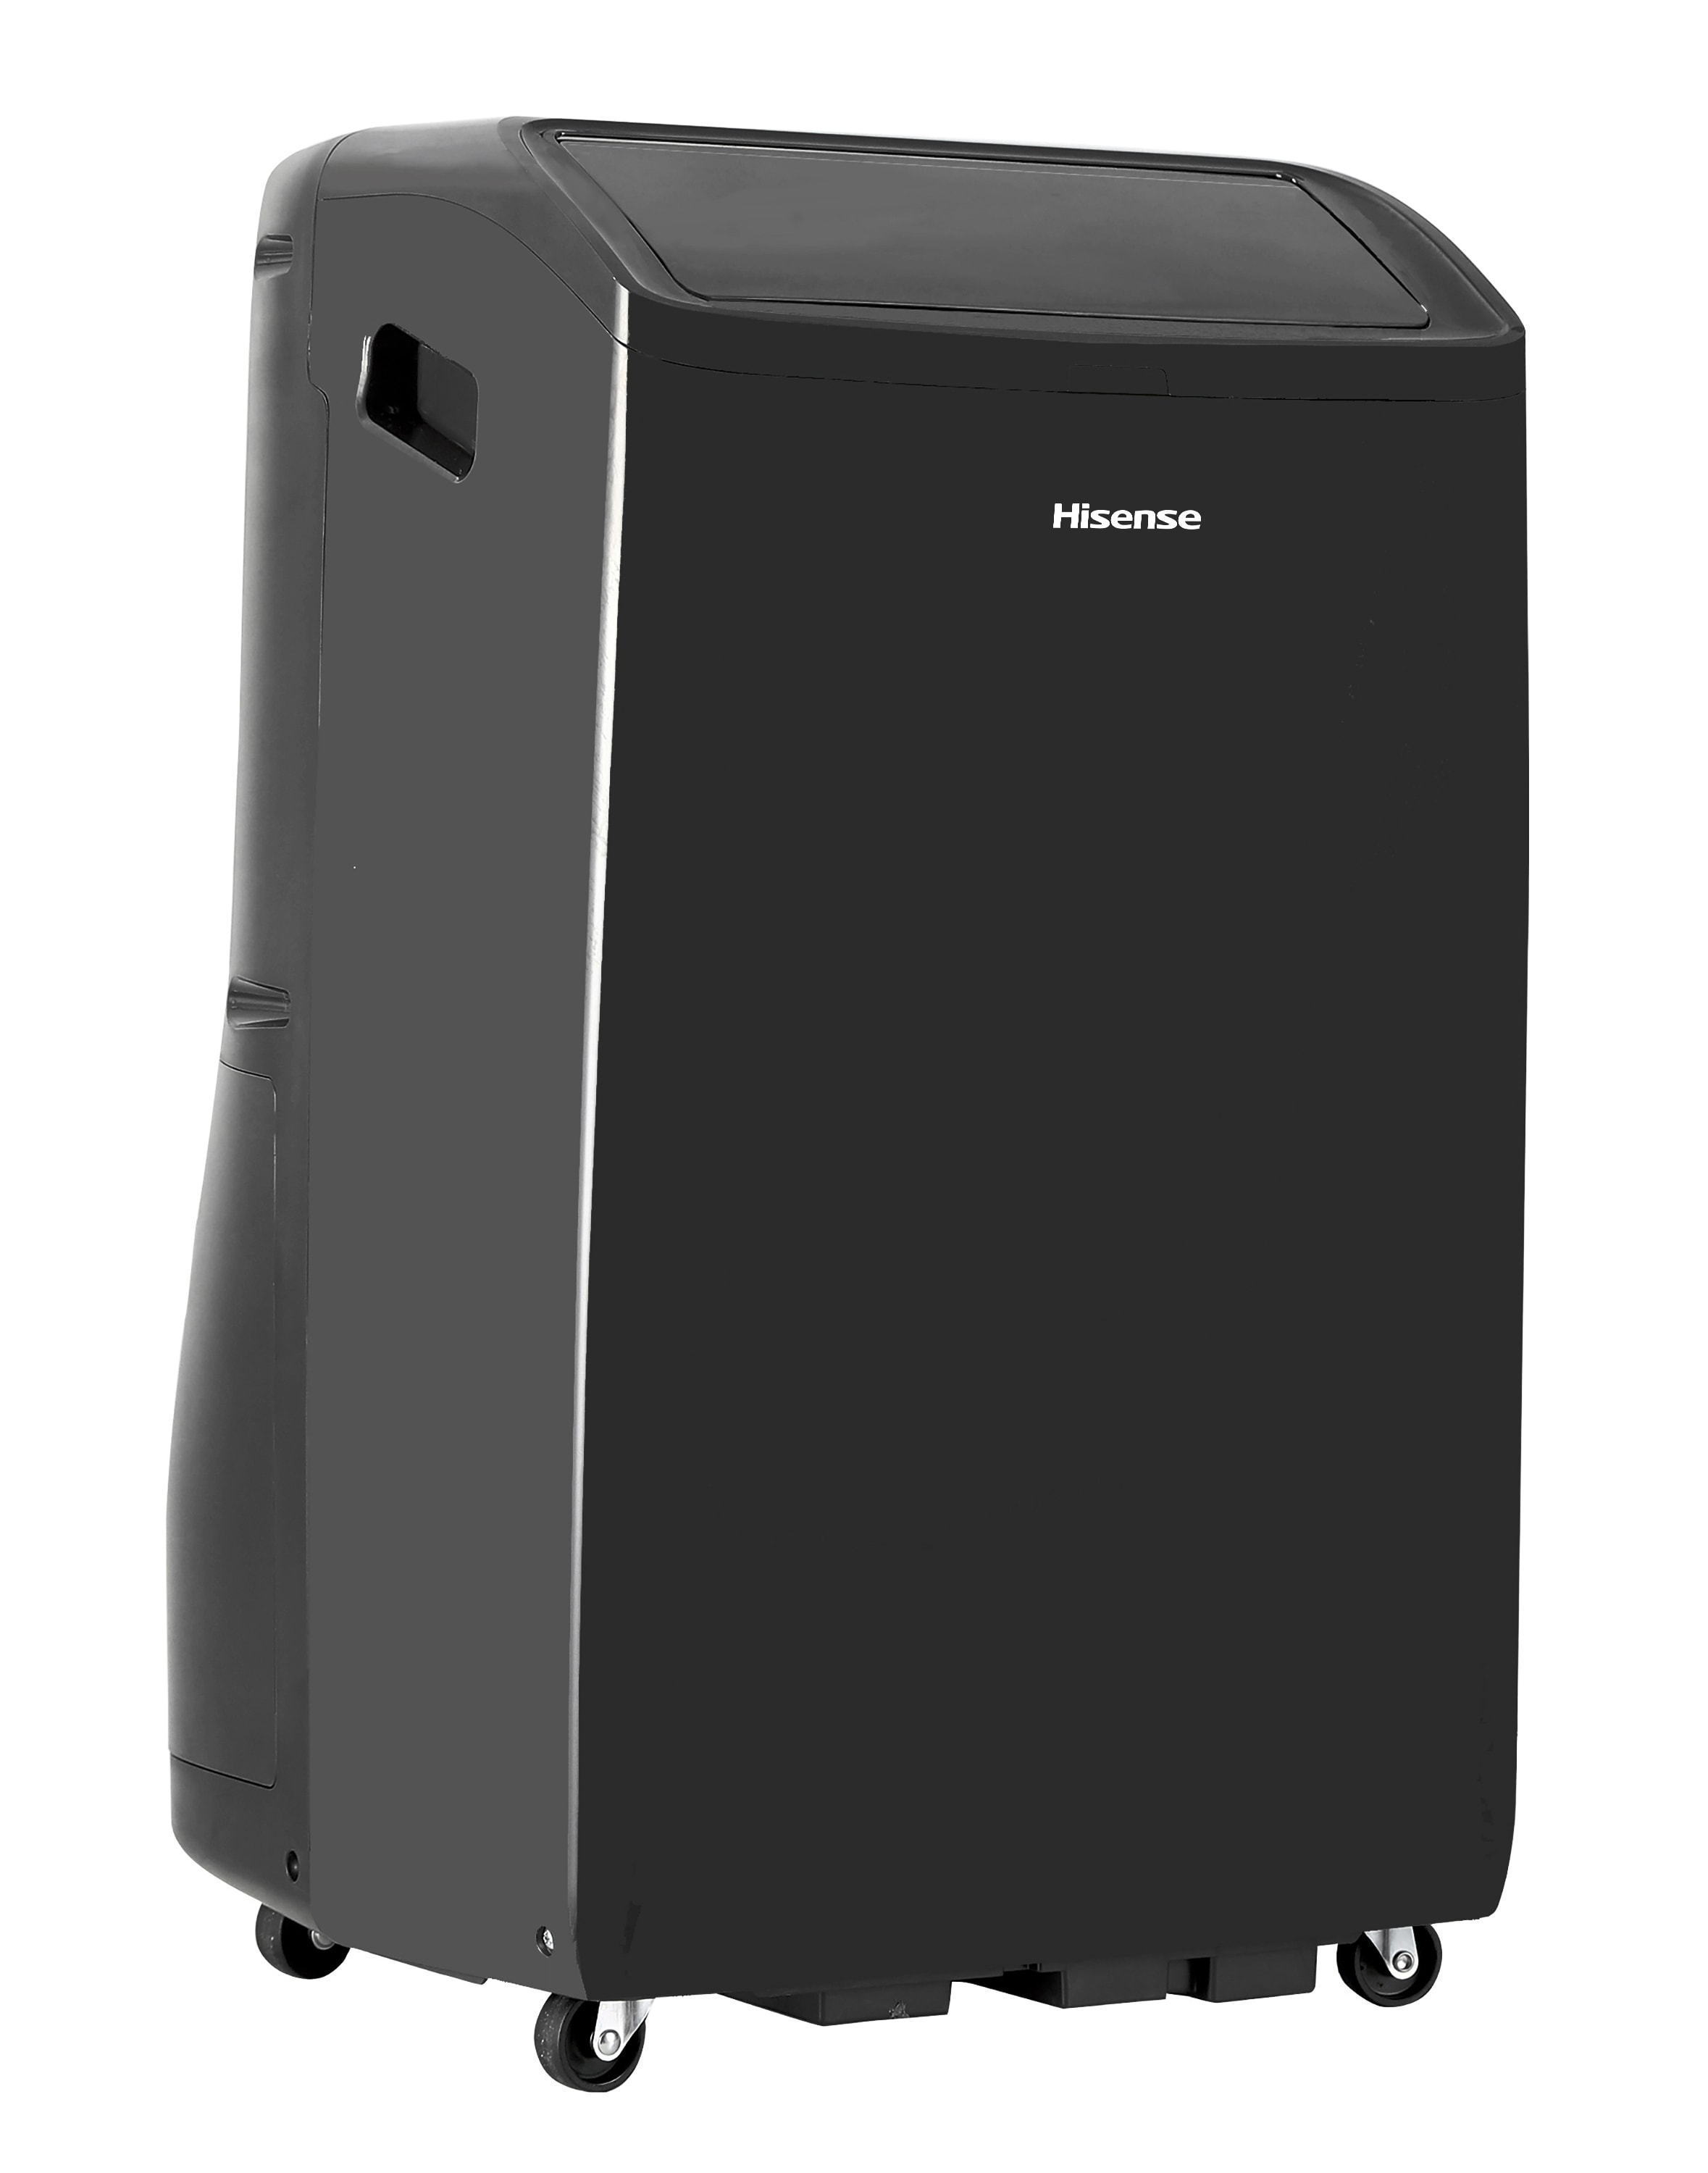 BLACK+DECKER 10000 BTU Portable Air Conditioner - Review 2022 